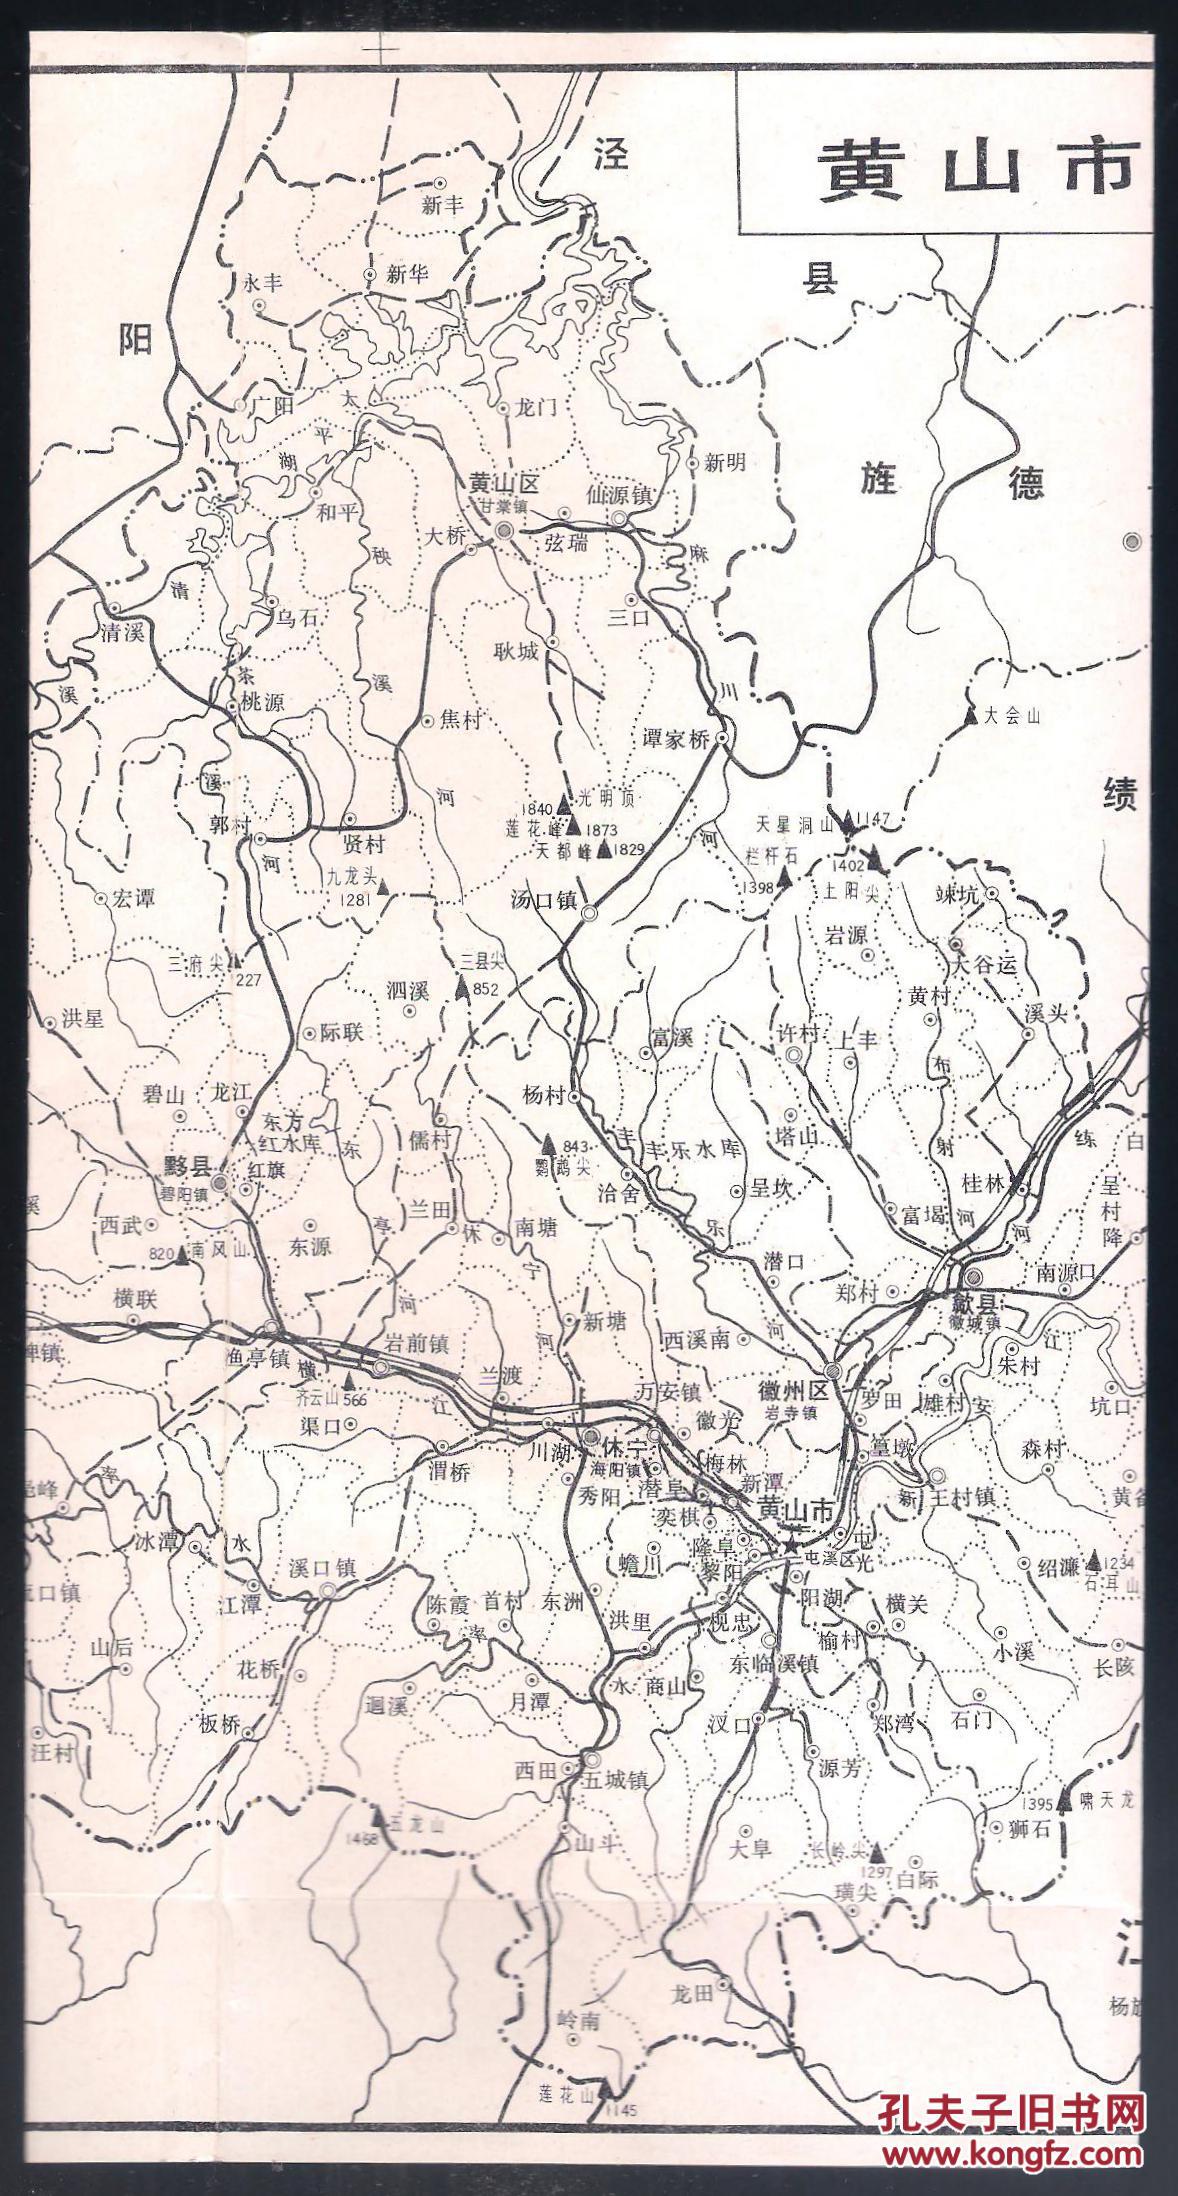 八九十年代旅游图 资料图 地方志附图 折装8开 黄山市交通及旅游景点分布图 行政区划图